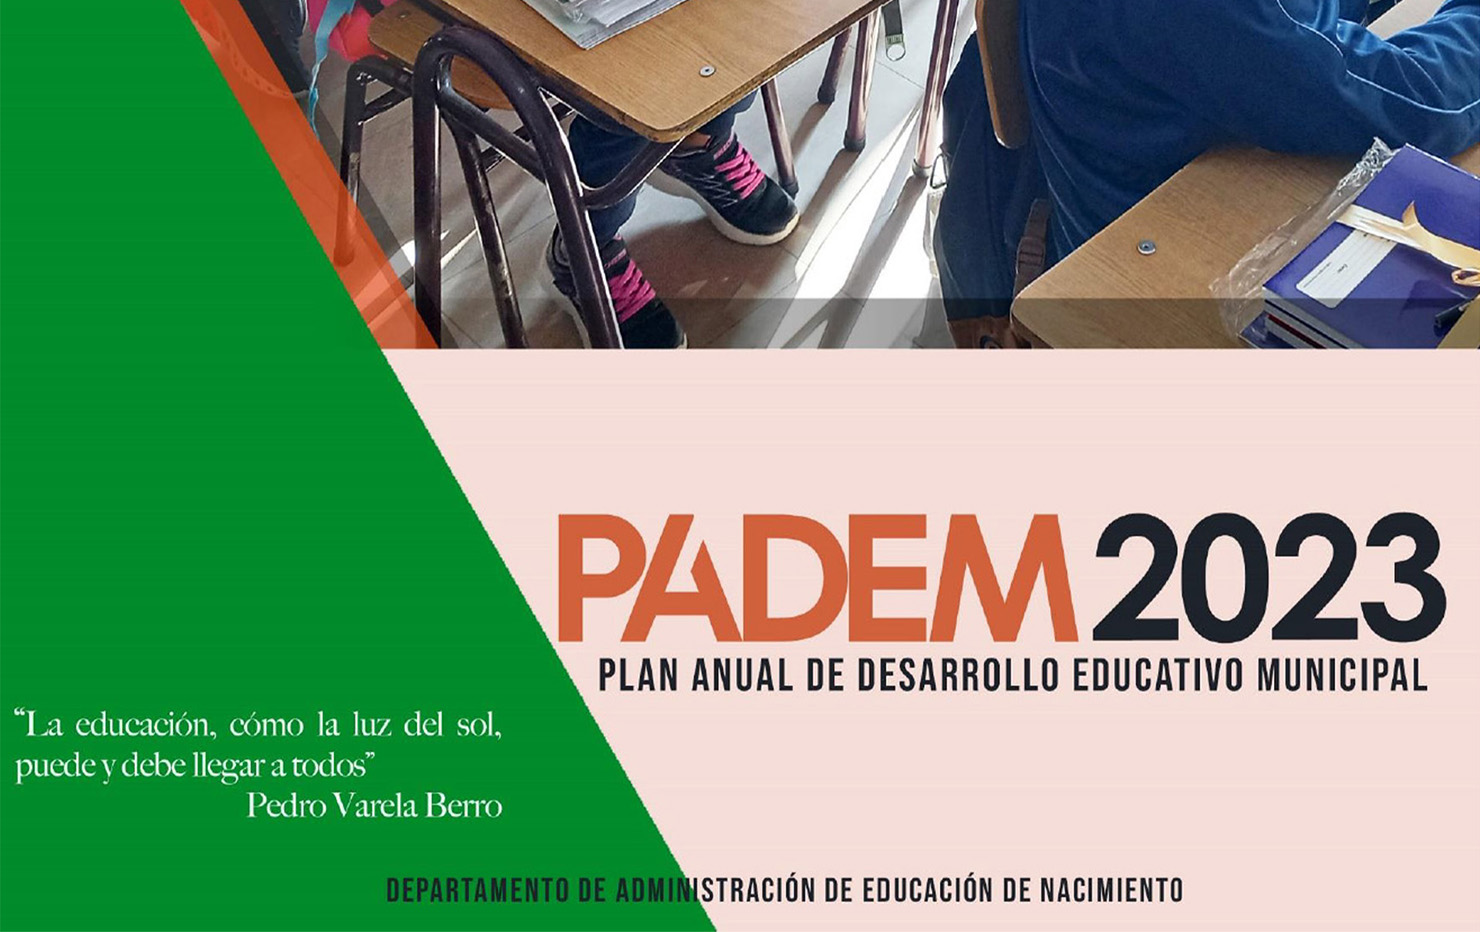 CONOZCA Y REVISE EL PLAN ANUAL DE DESARROLLO EDUCATIVO MUNICIPAL (PADEM) 2023 DE NACIMIENTO